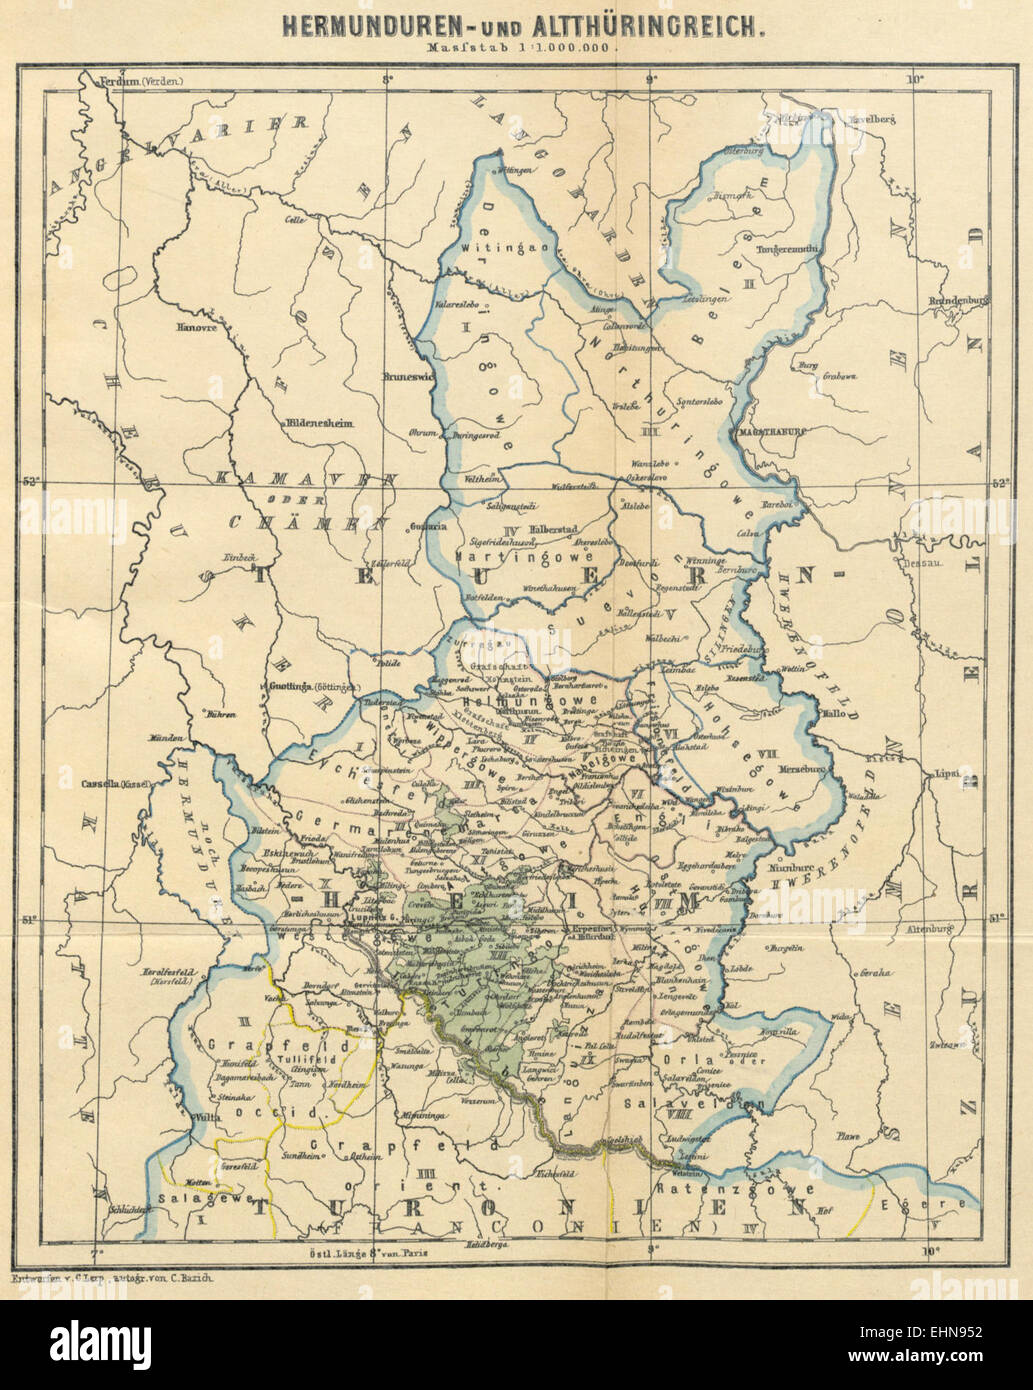 LERP(1892) Karte zur Verbreitung der Hermunduren und Alt-Thüringer Stock Photo